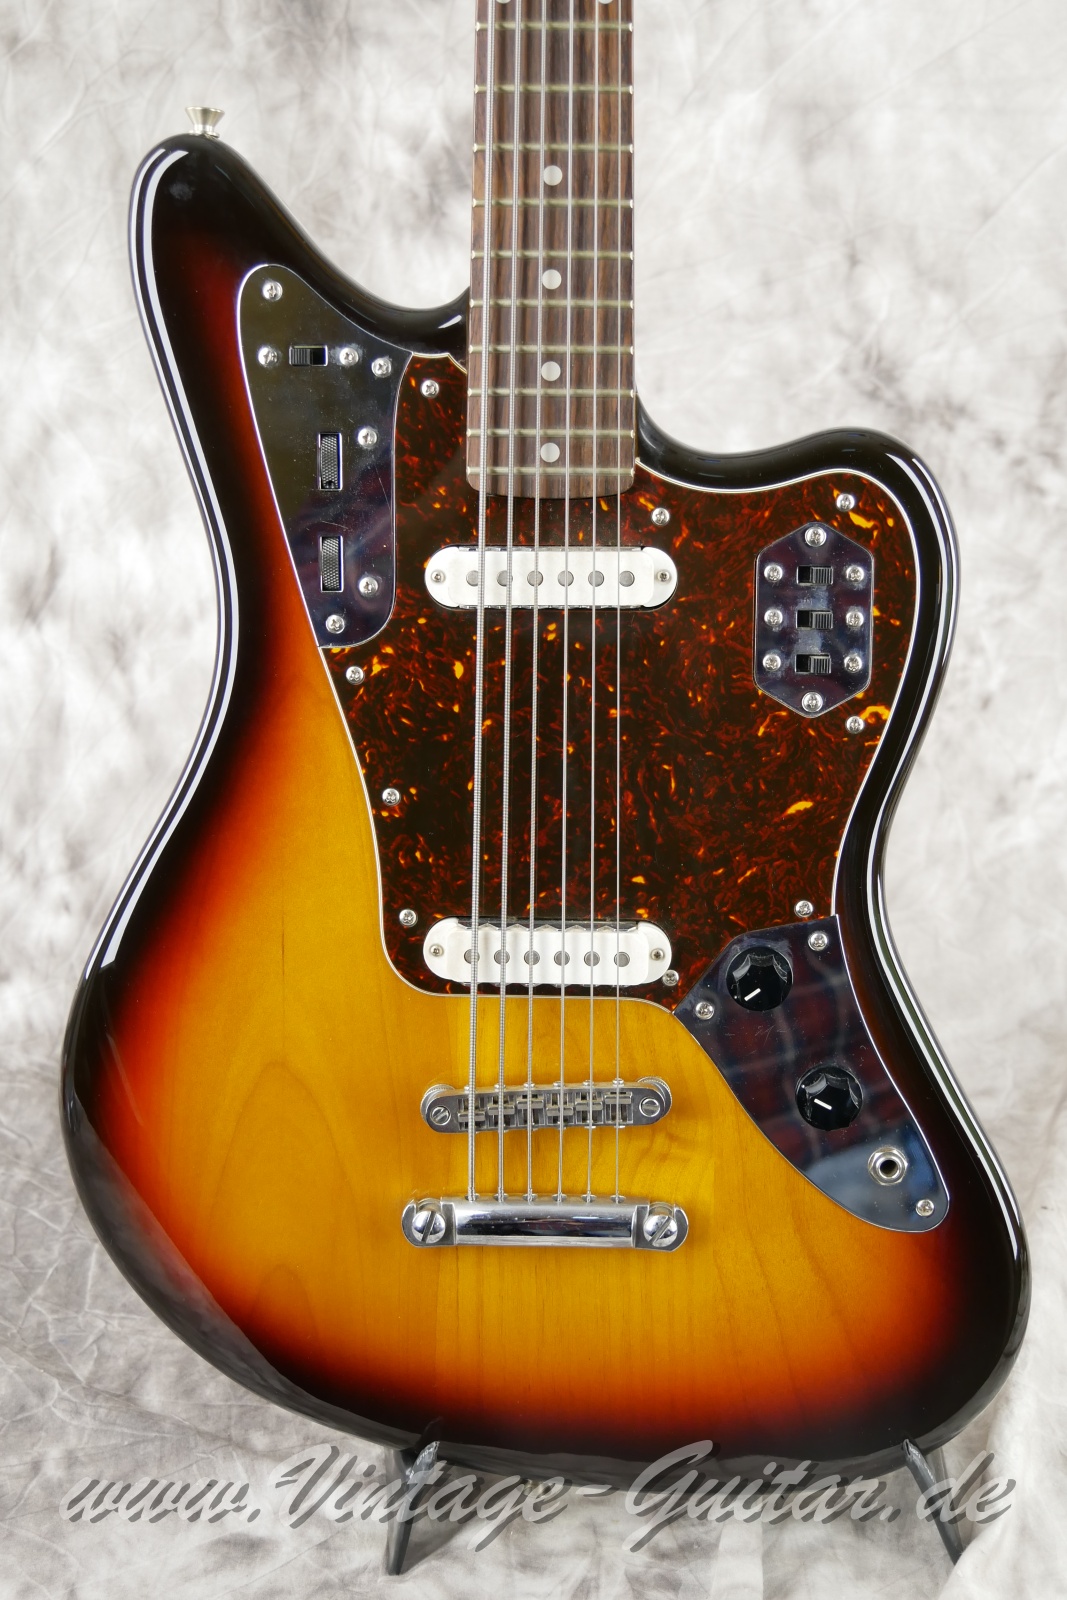 Fender_Jaguar_Baritone_Custom_Japan_sunburst_1993-007.JPG